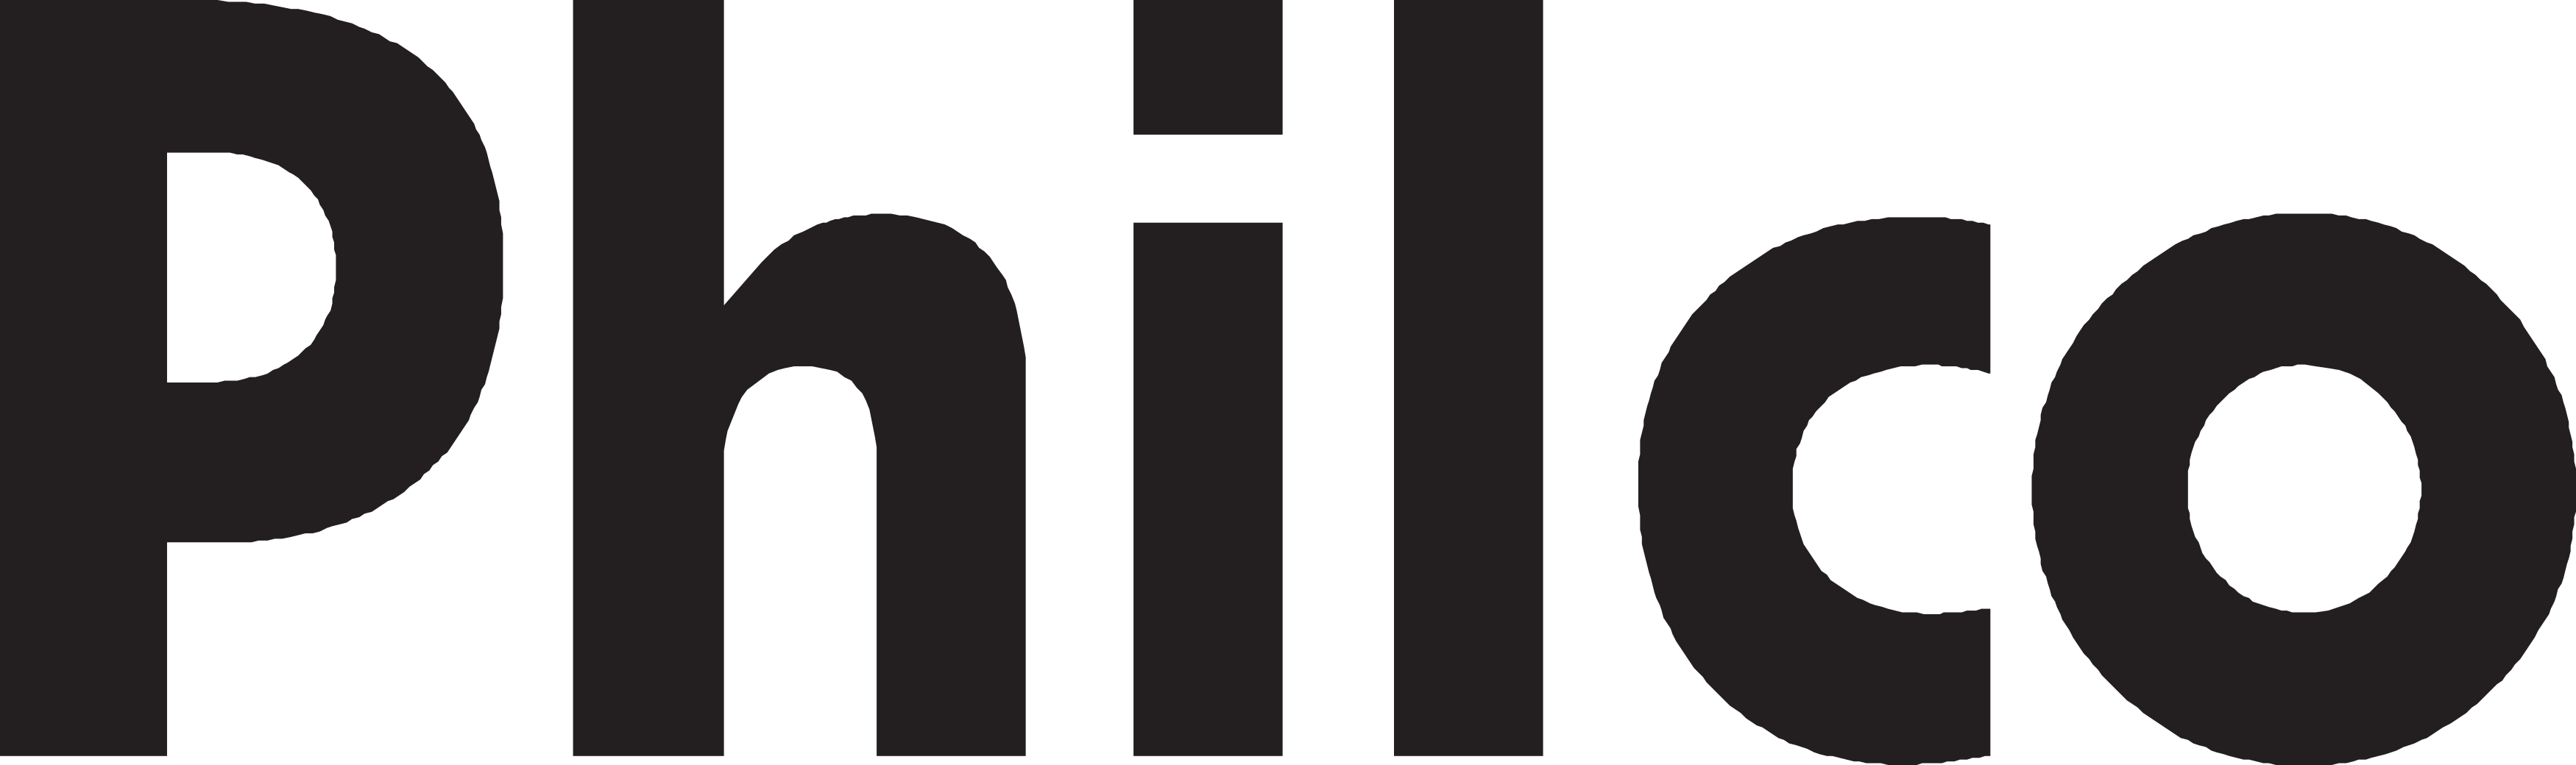 philco-logo